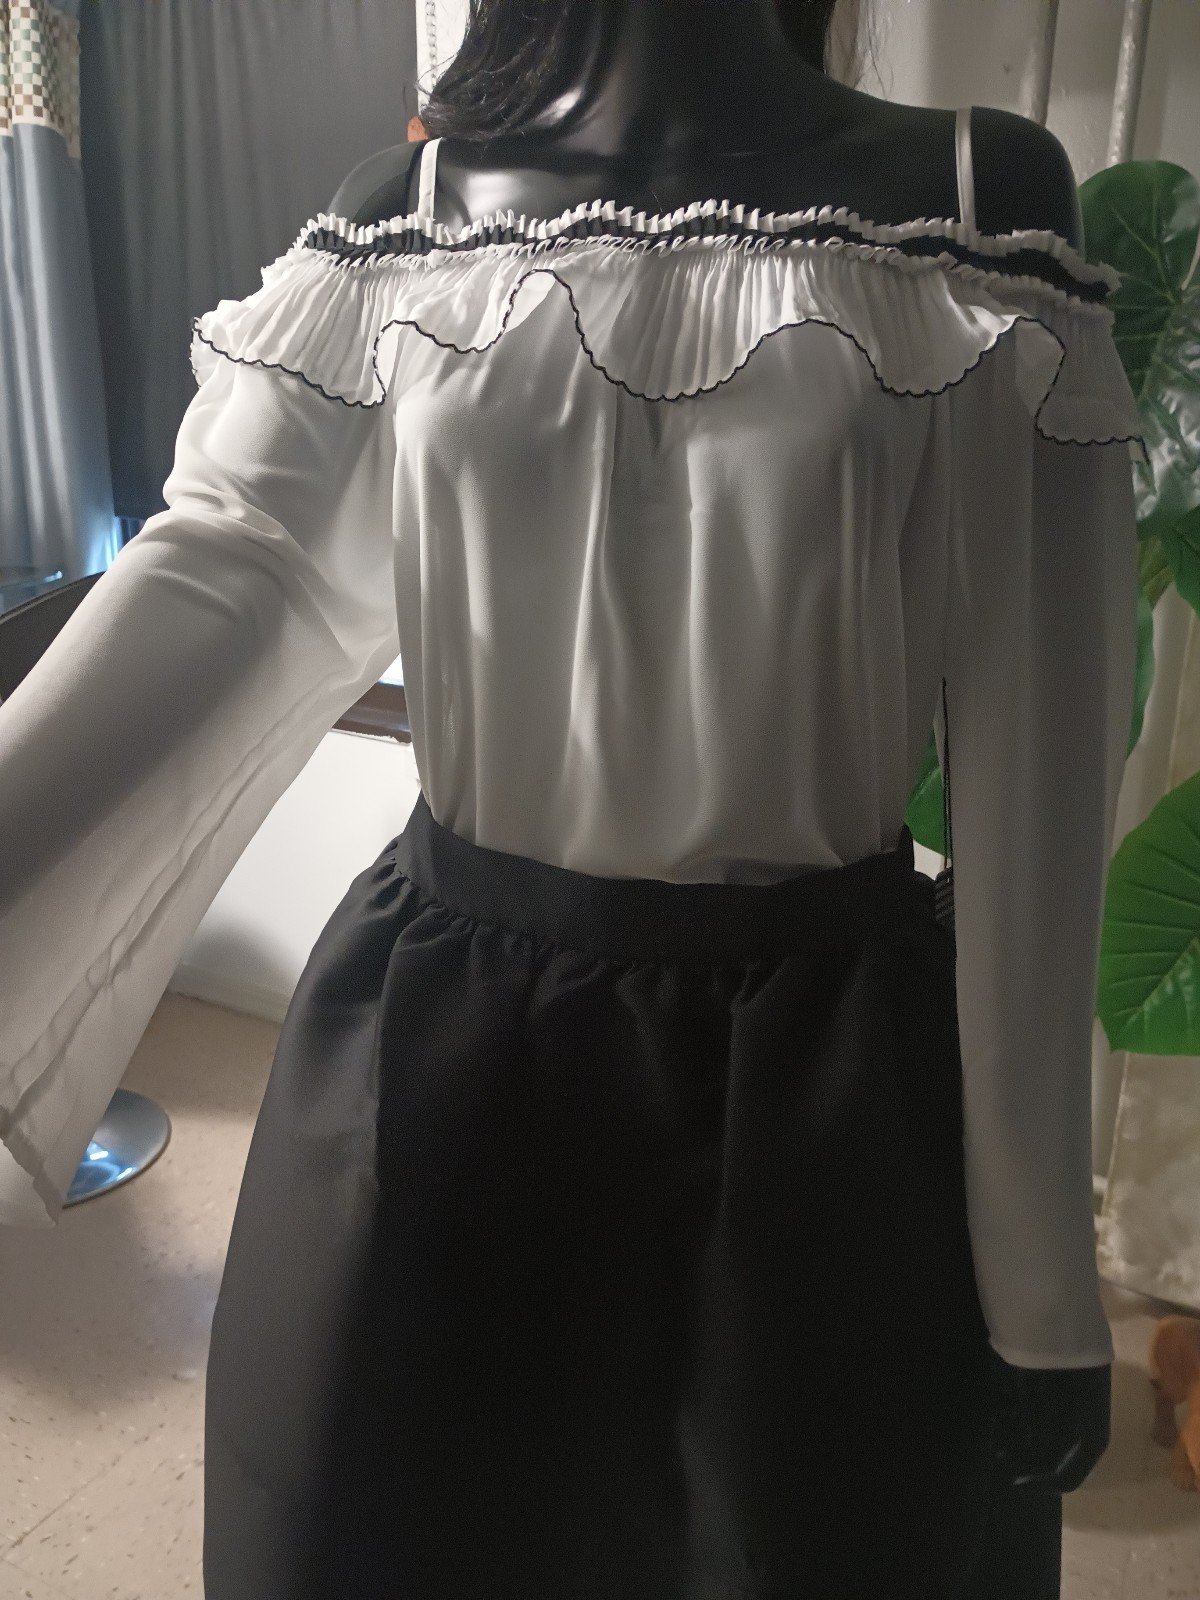 large discount Haute Monde 2 piece skirt set size large lpon4lYx3 Wholesale